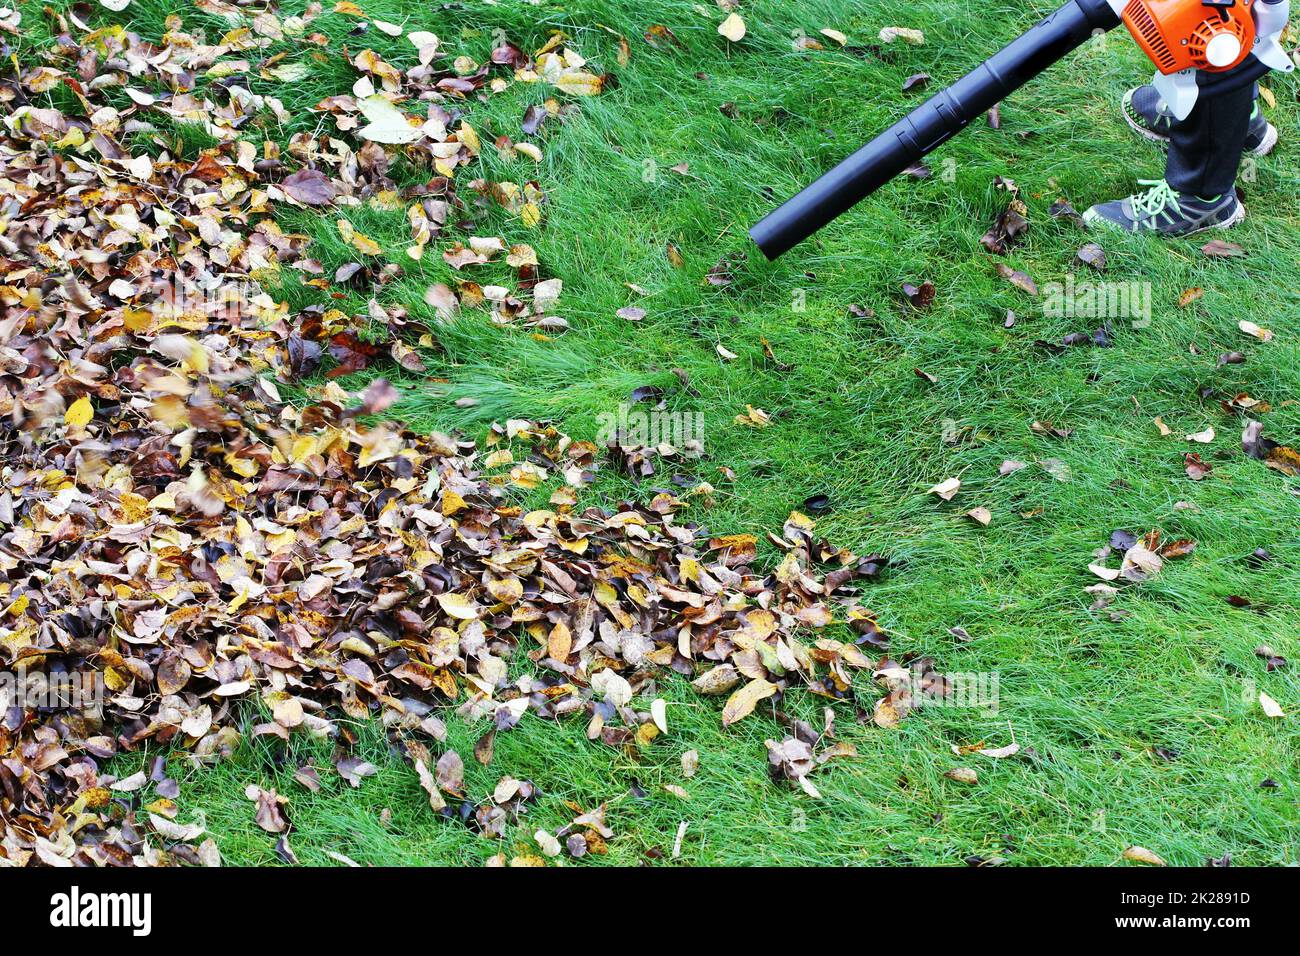 Gärtner, Clearing die Blätter mit einem laubbläser Werkzeug Stockfoto